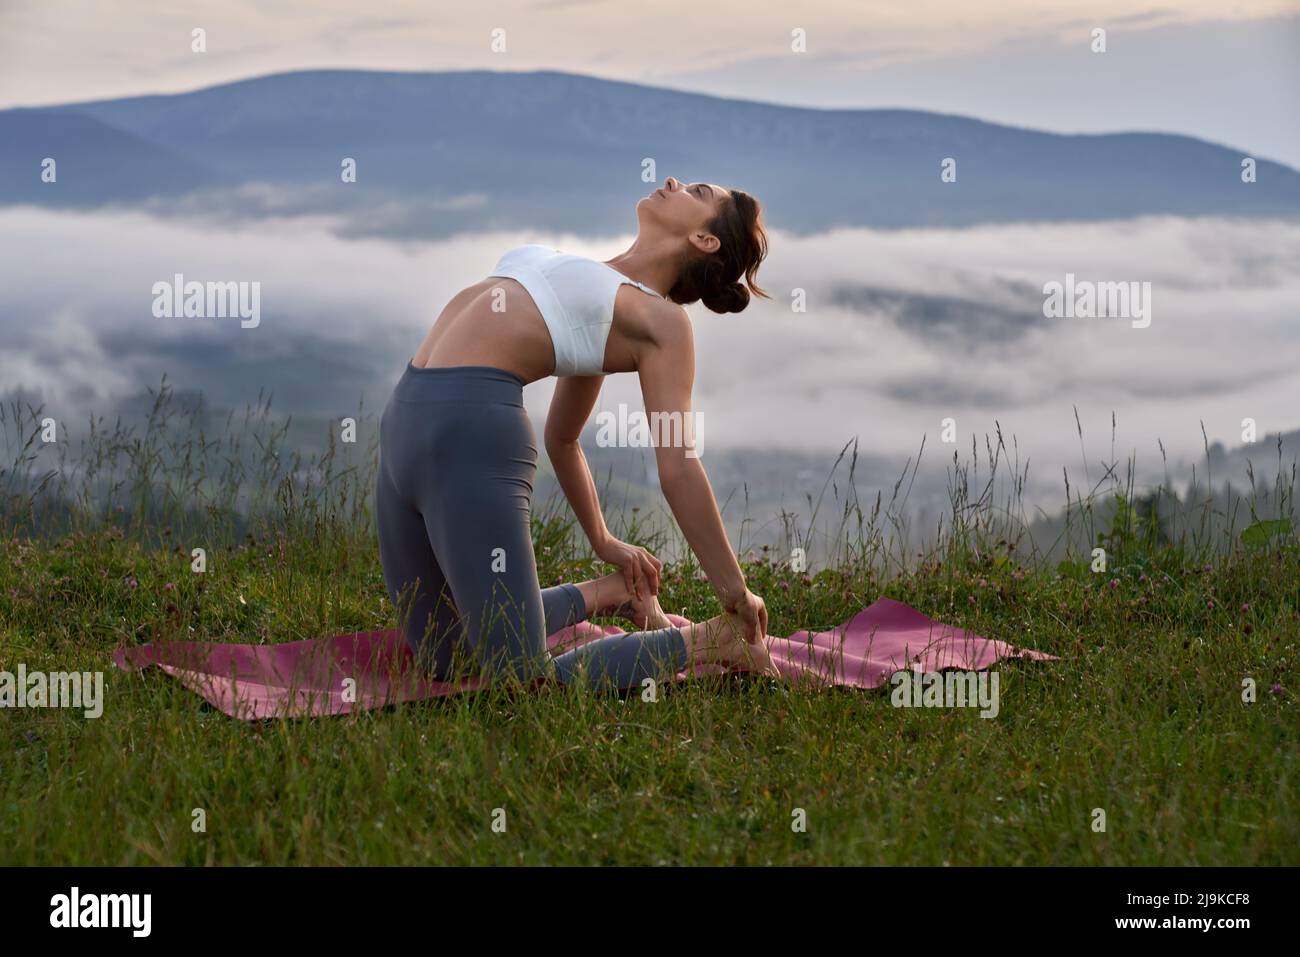 Athletische junge Frau in Sport-BH und Leggings, die den Körper auf einer Yogamatte im Freien dehnt. Weibliche Person, die aktiv in den Sommerbergen trainiert. Stockfoto